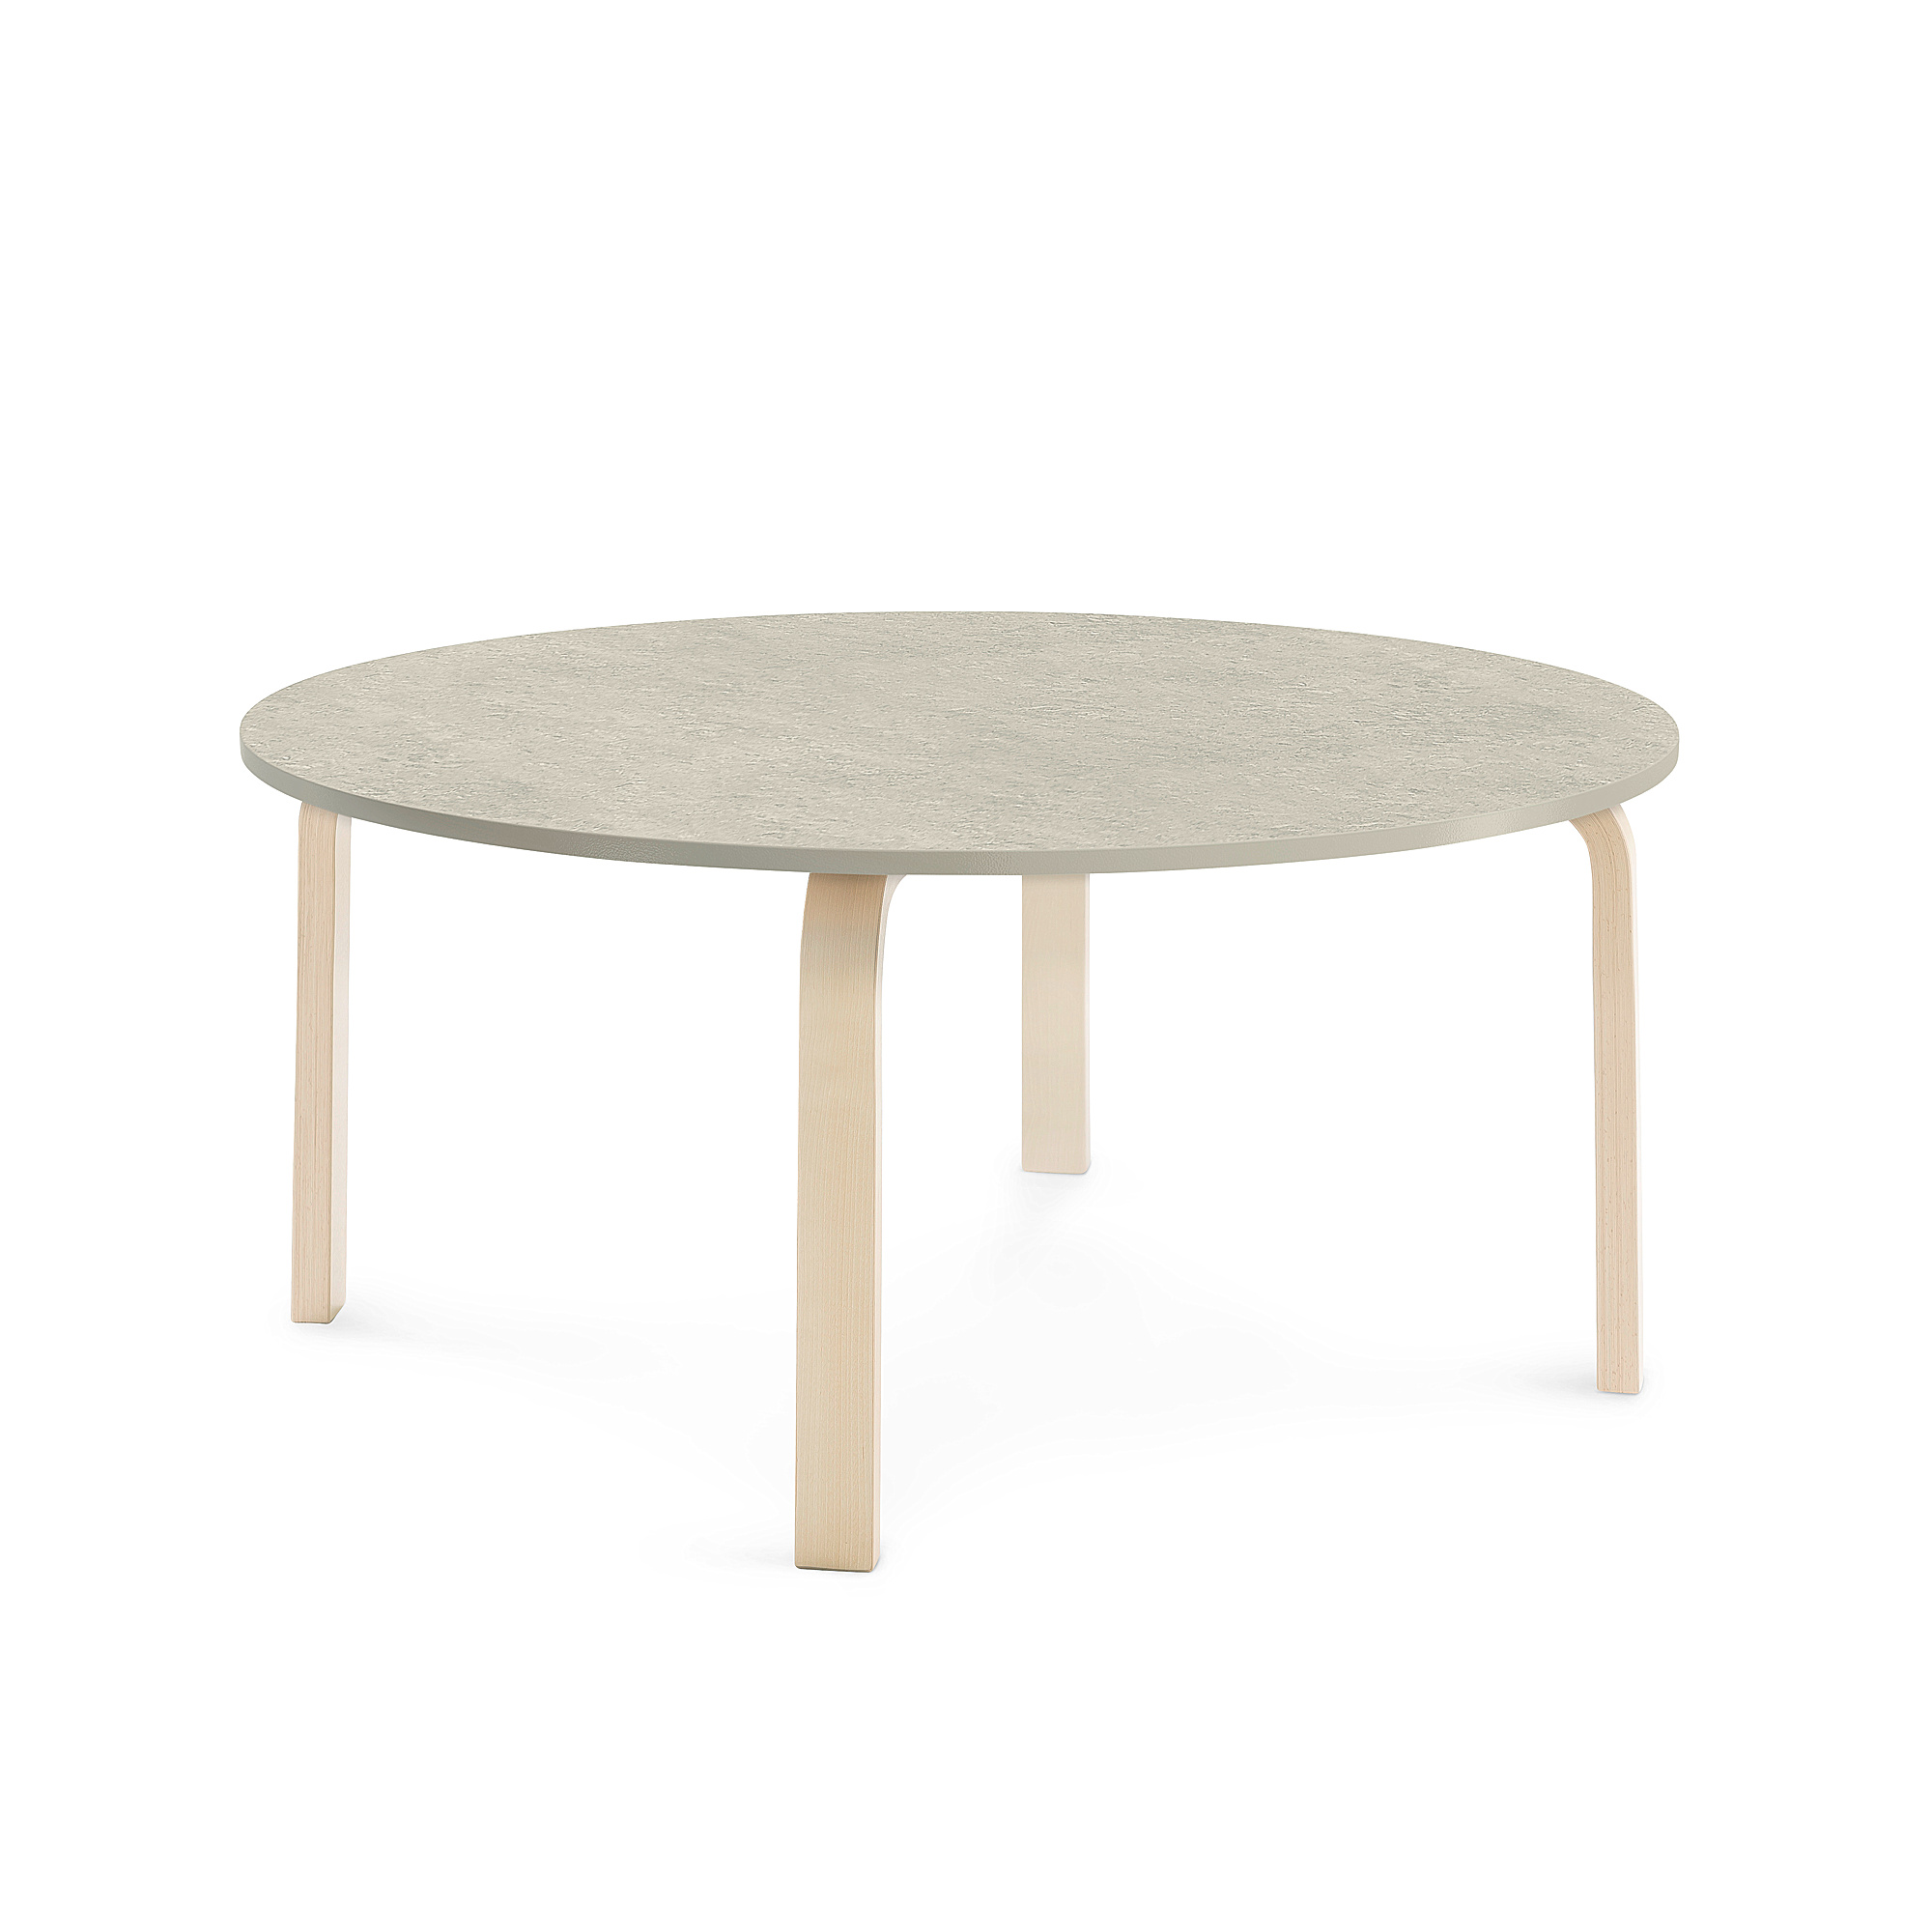 Stůl ELTON, Ø 1200x530 mm, bříza, akustické linoleum, šedá